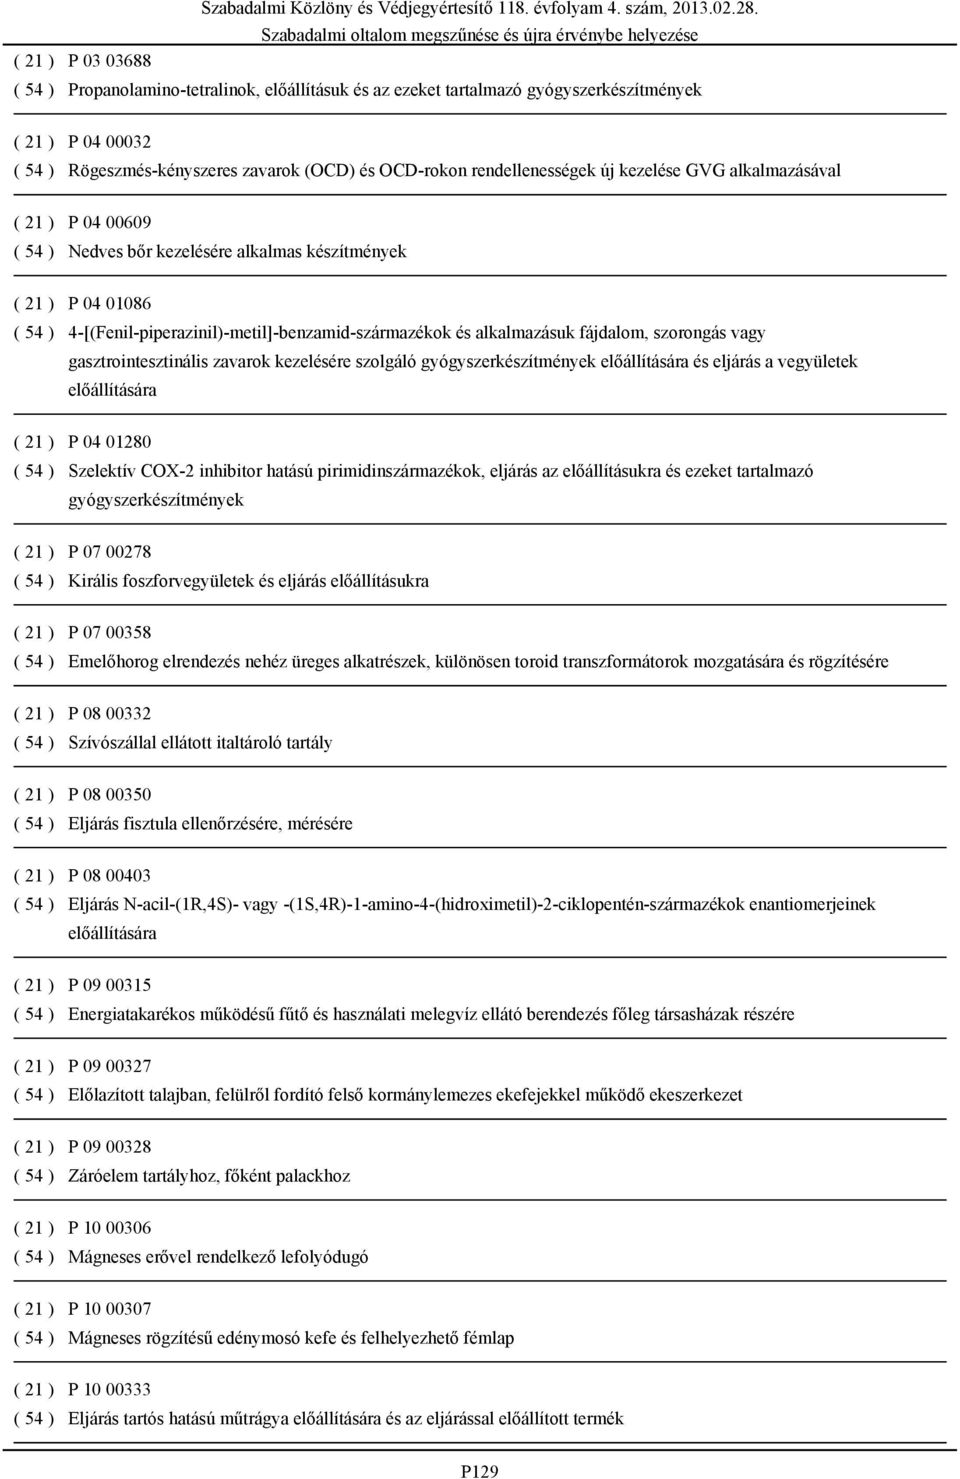 fájdalom, szorongás vagy gasztrointesztinális zavarok kezelésére szolgáló gyógyszerkészítmények előállítására és eljárás a vegyületek előállítására ( 21 ) P 04 01280 ( 54 ) Szelektív COX-2 inhibitor